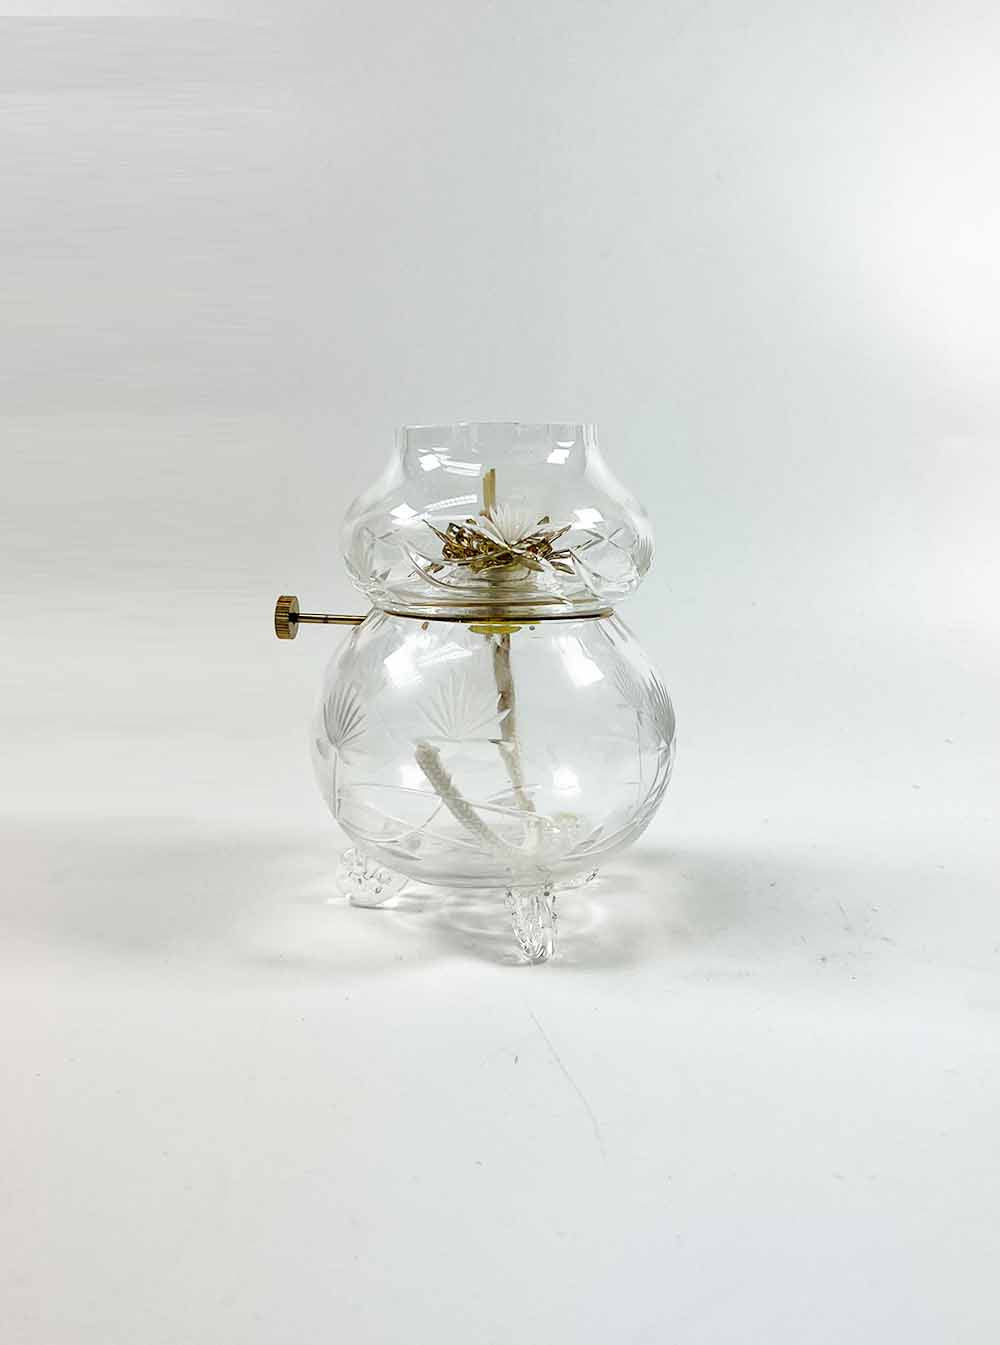 Carved Lotus Design with Metal Lotus Petals Oil Lamp